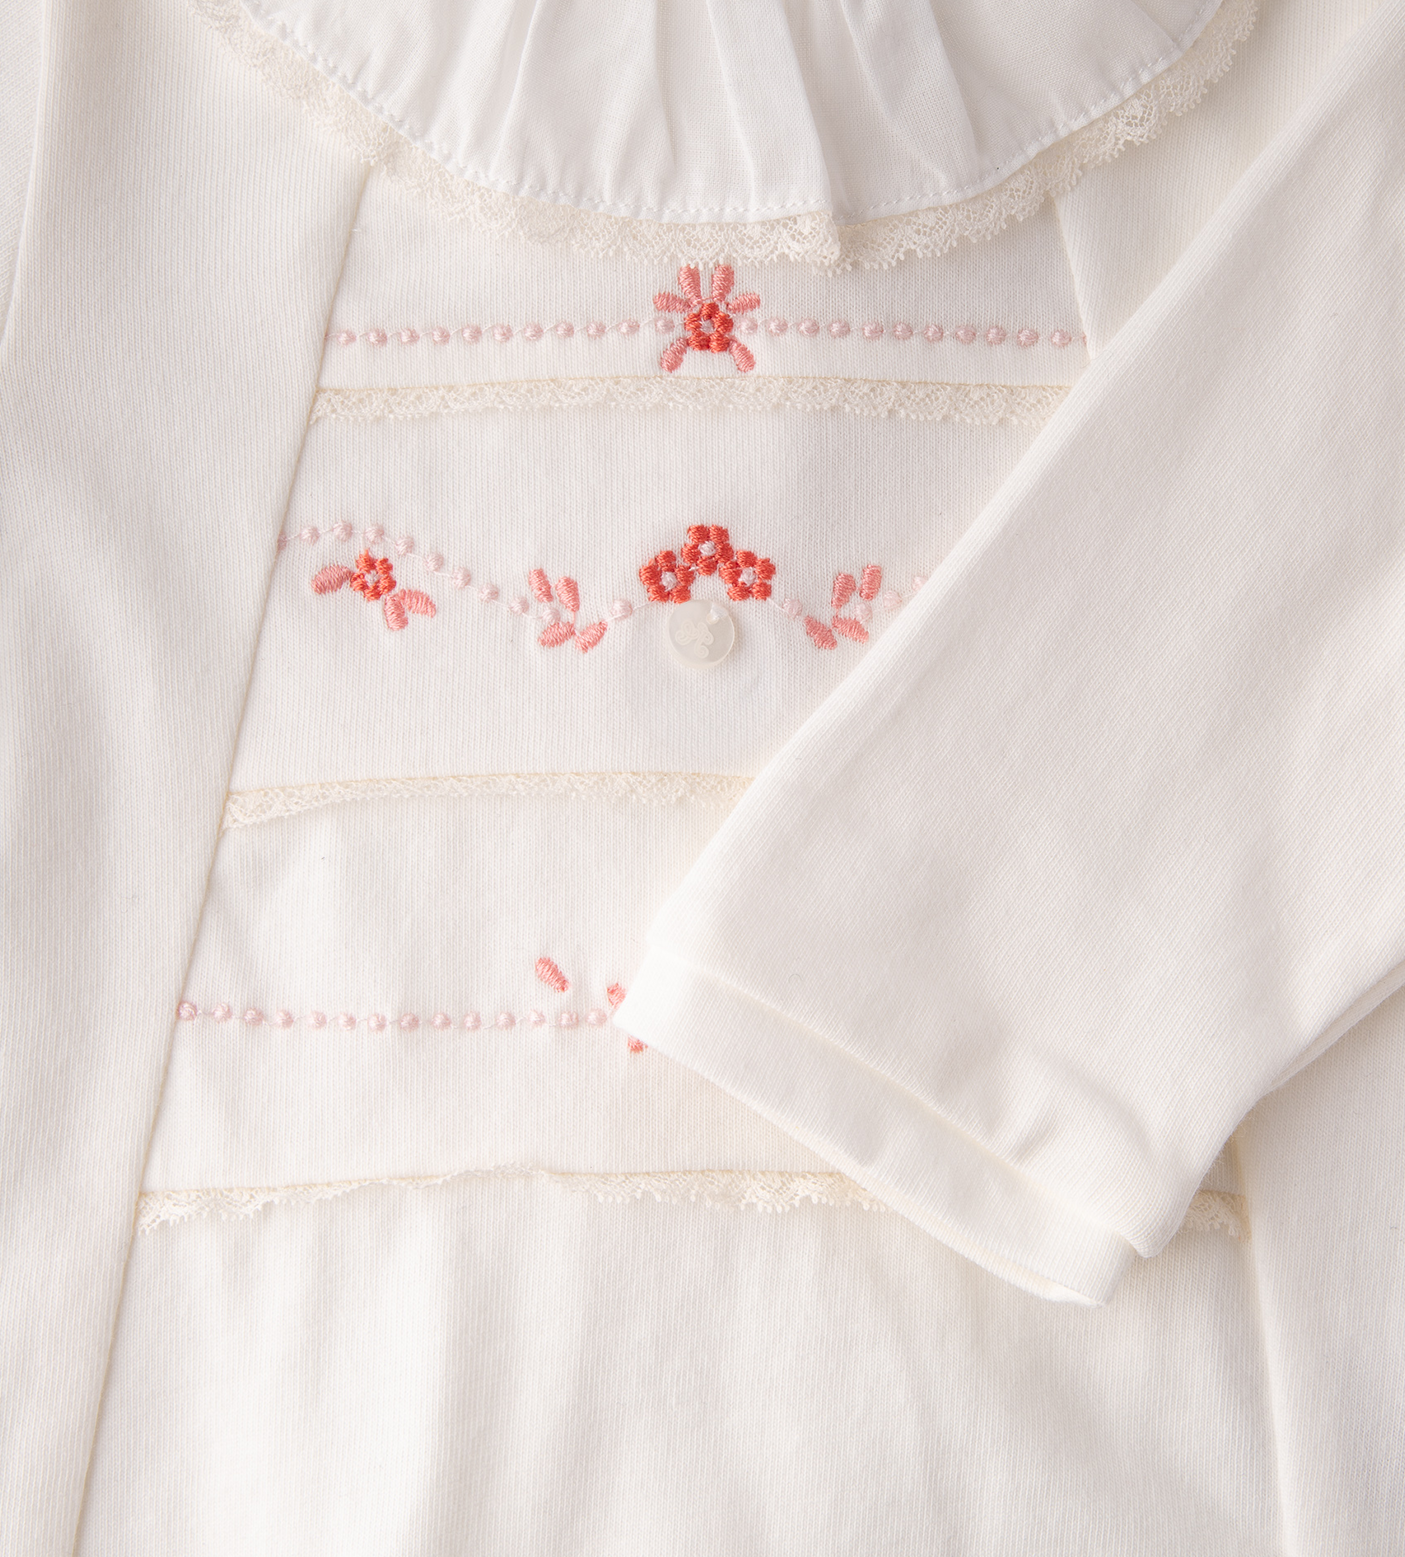 Long Sleeve Baby Pyjamas White